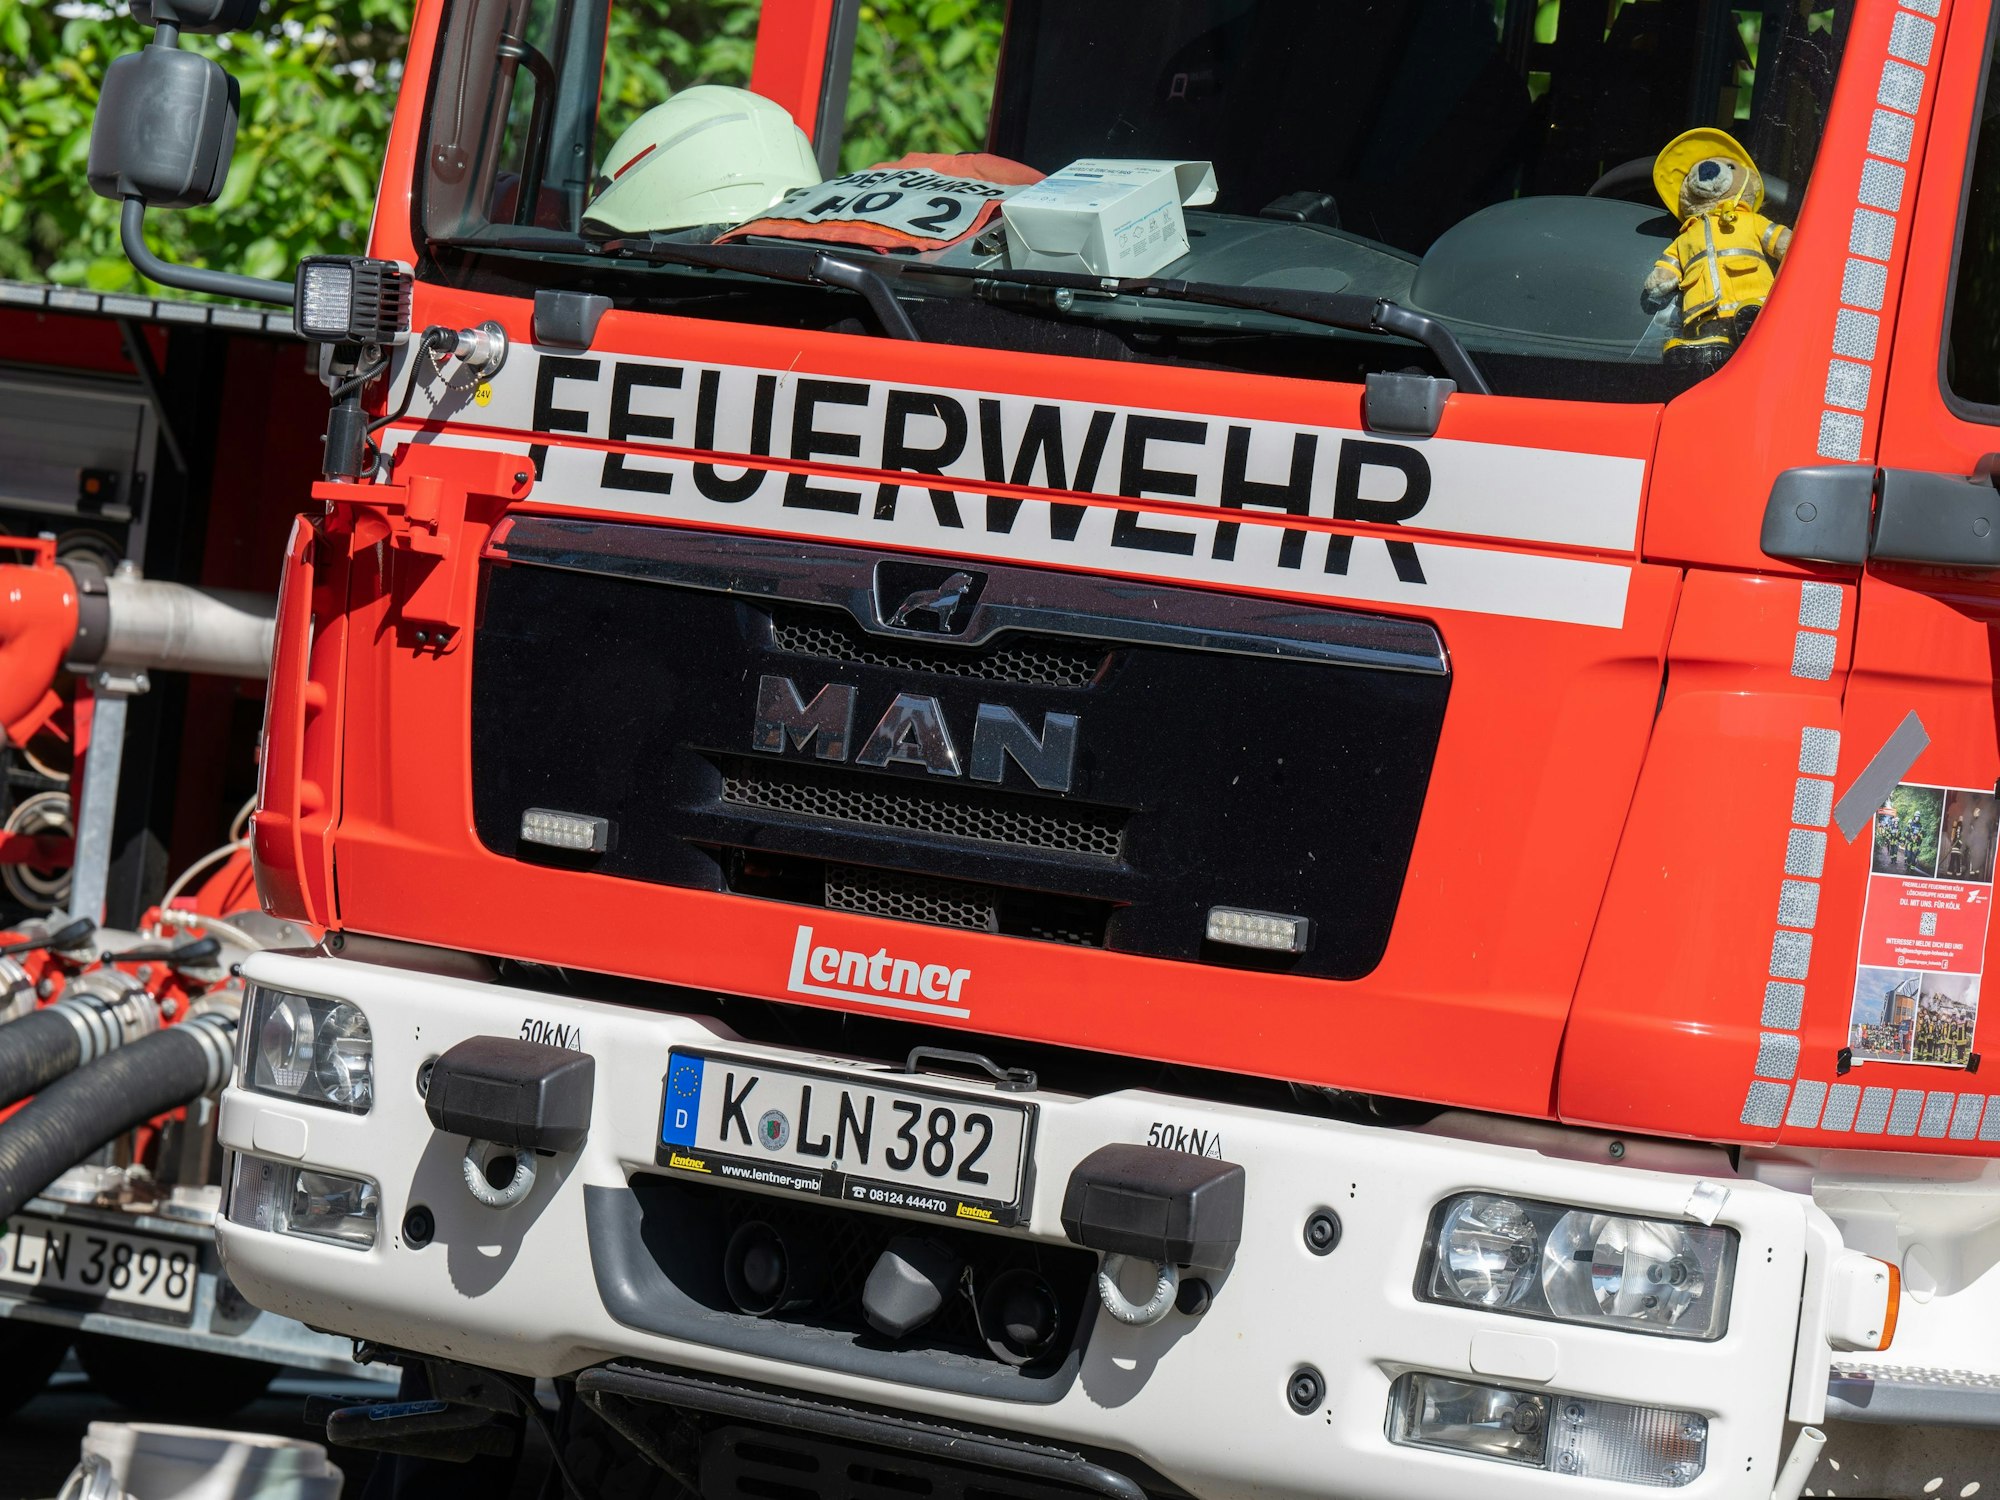 Ein Einsatzfahrzeug der Kölner Feuerwehr ist von vorne zu sehen.